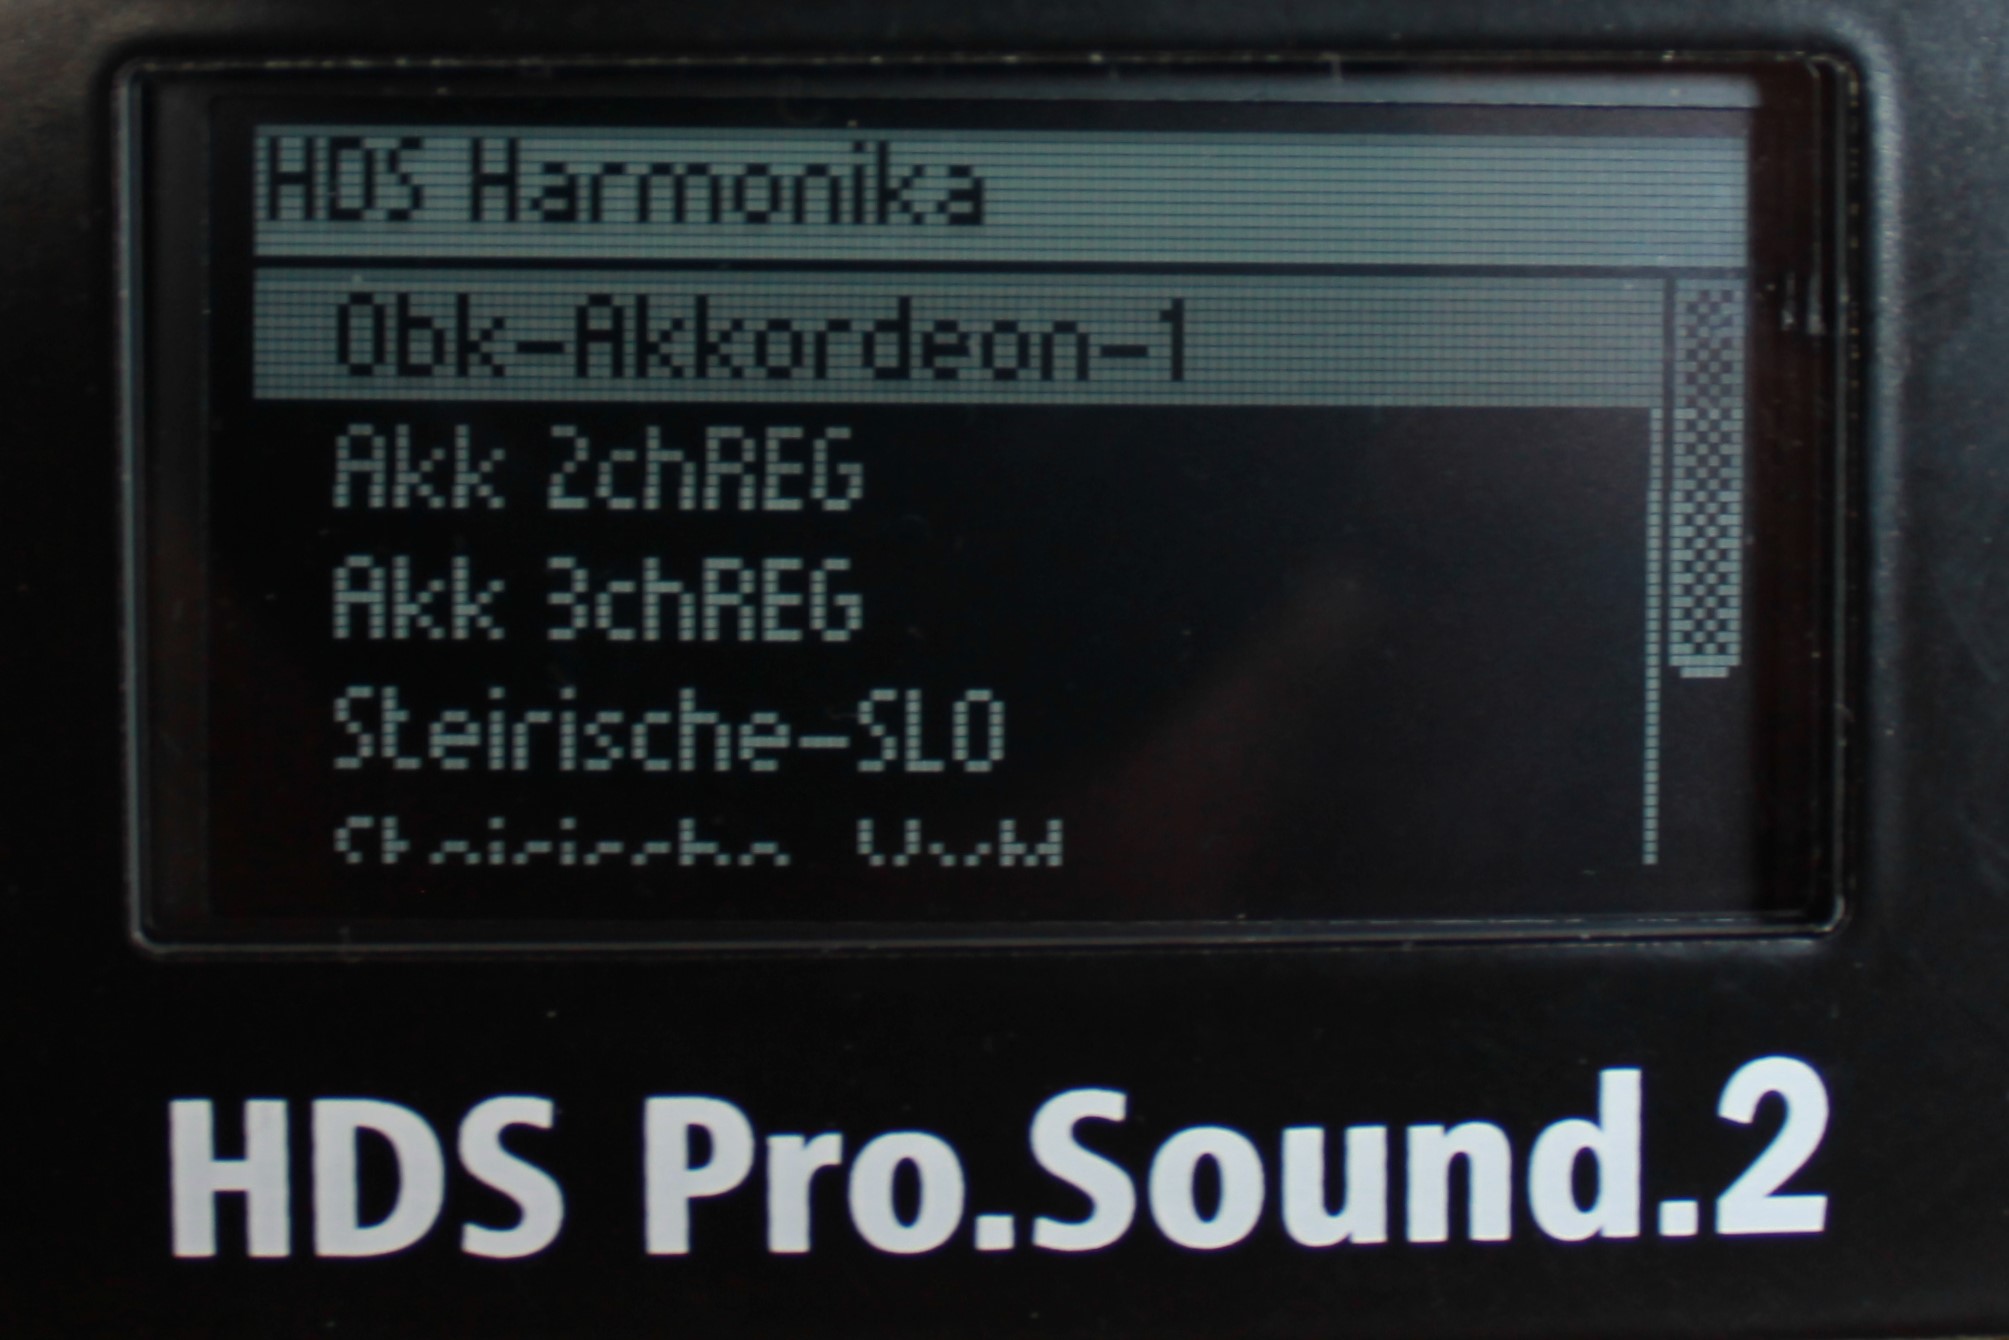 Meine ersten Eindrücke vom HDS Pro.Sound.2